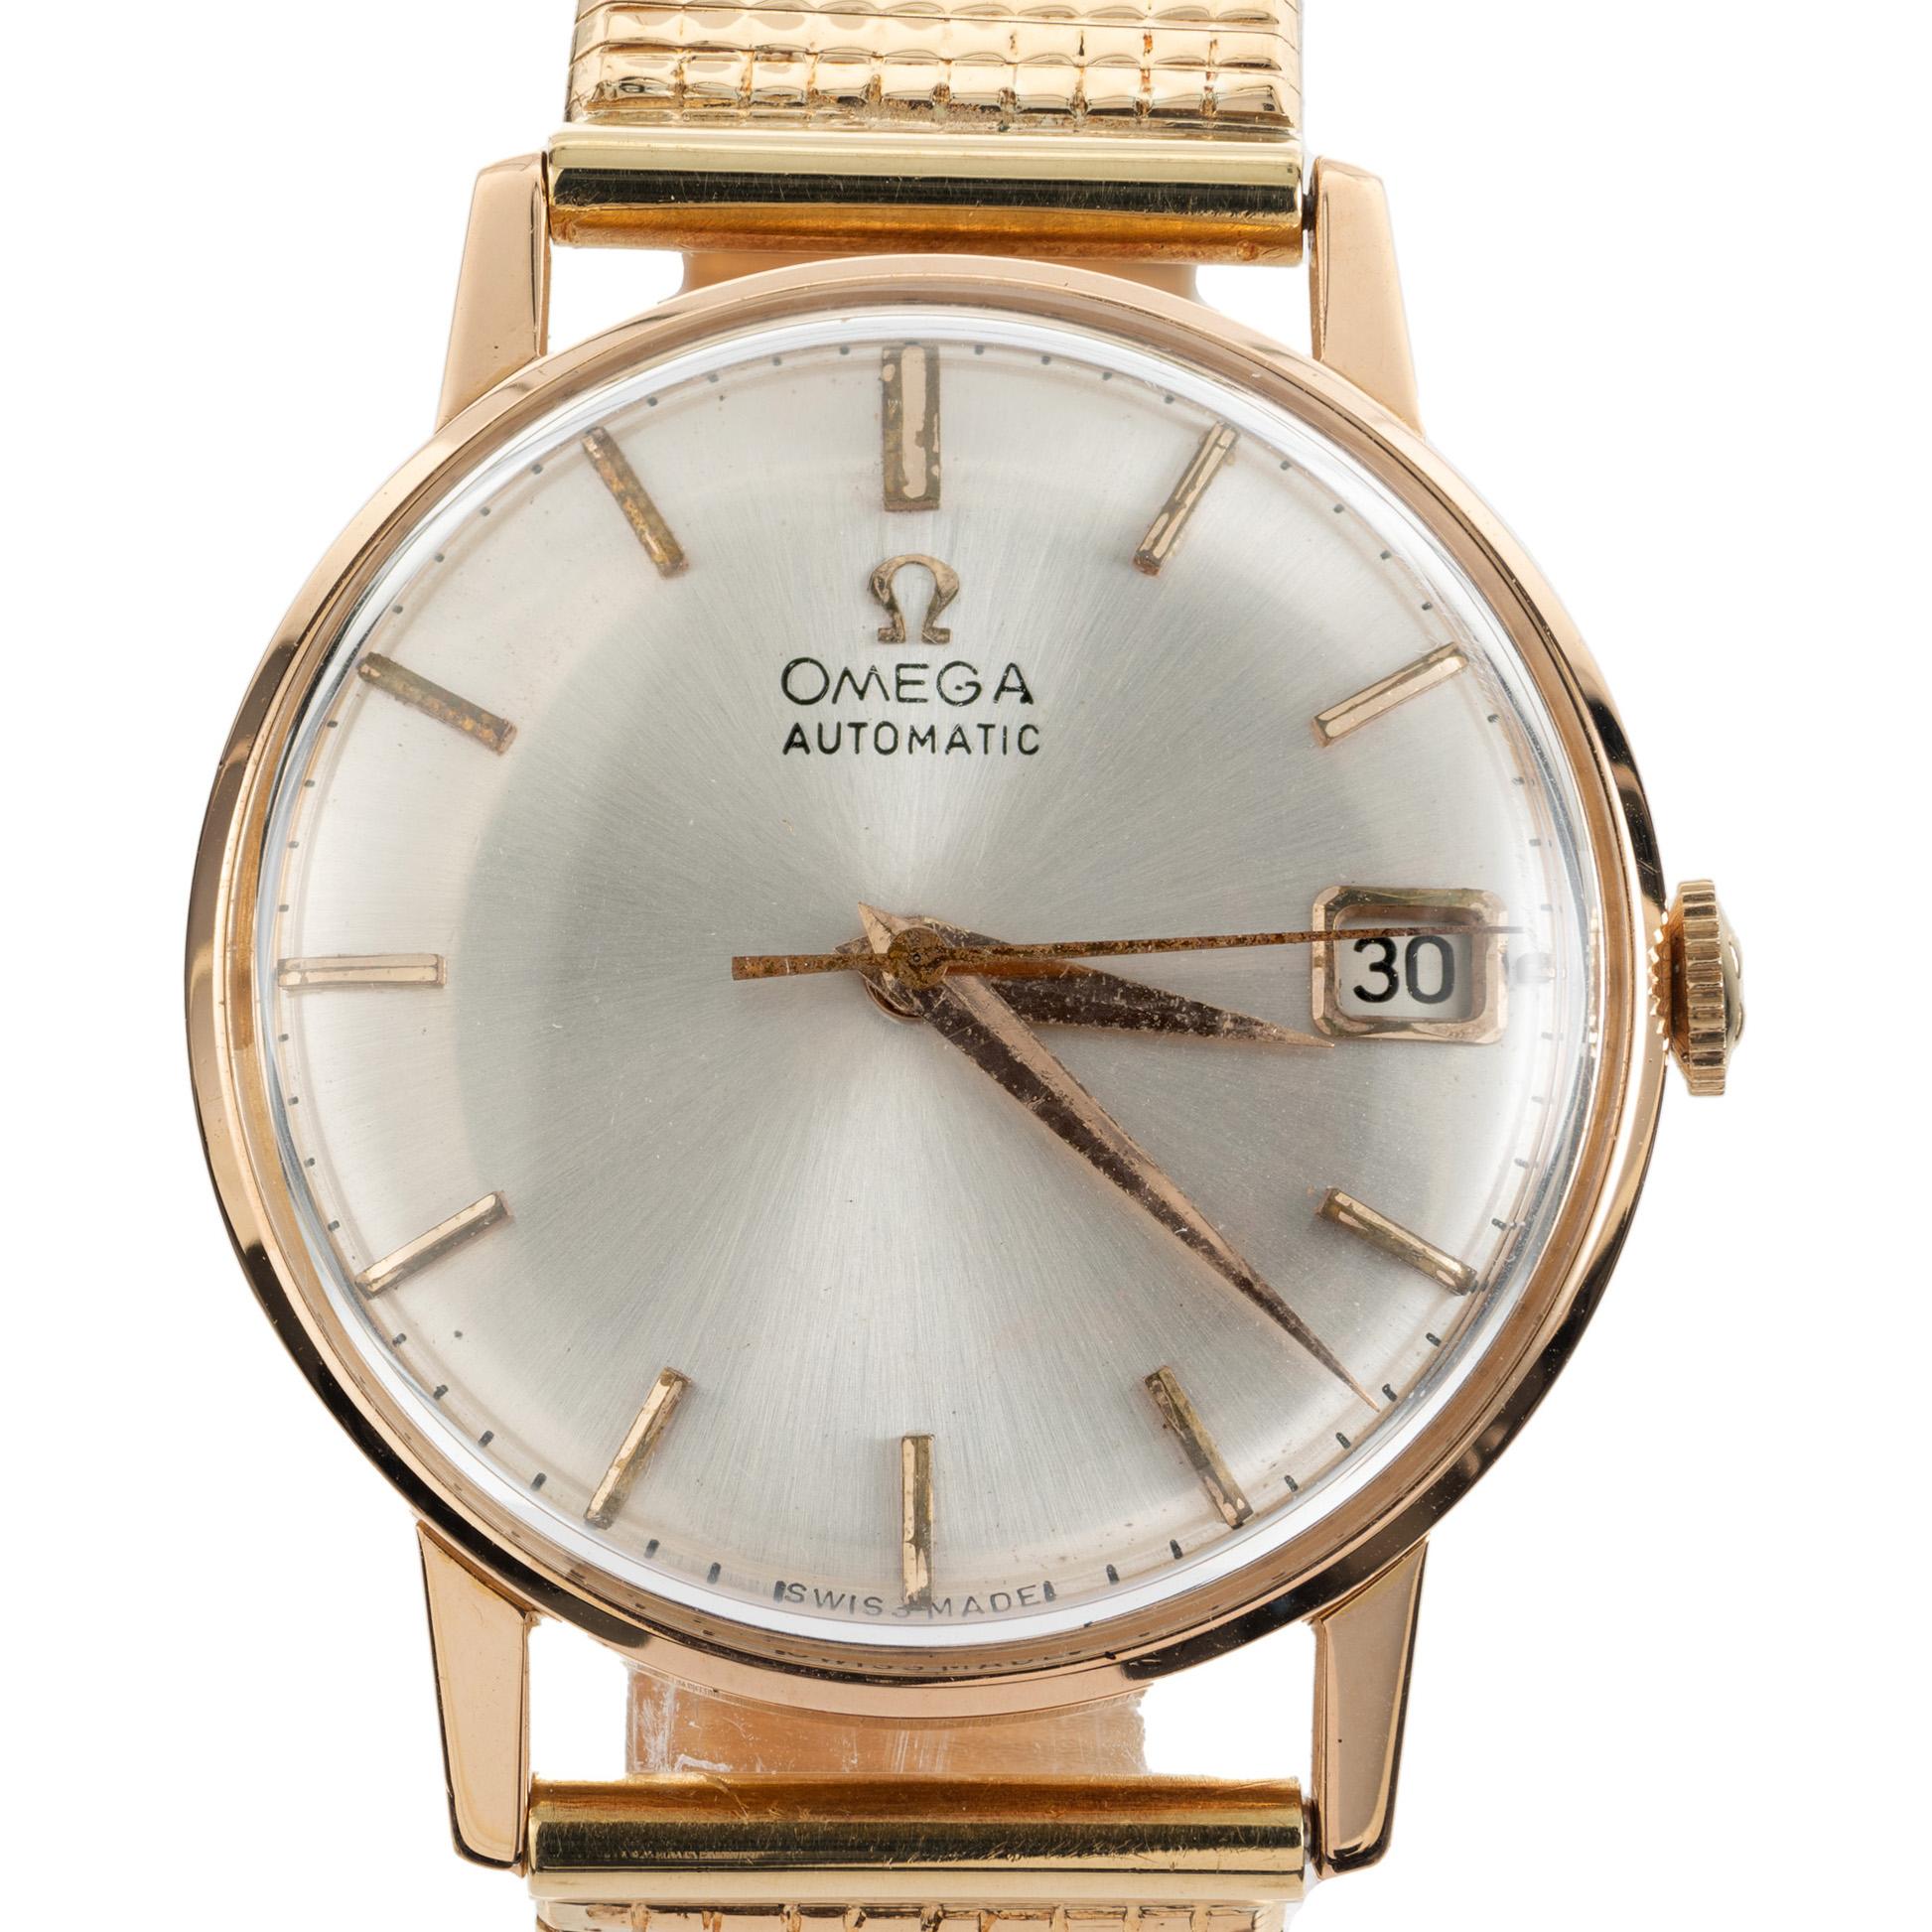 Omega Herrenarmbanduhr Classic Automatic aus der Mitte der 1960er Jahre, ein Zeitmesser, der Eleganz und Raffinesse verkörpert. Diese Armbanduhr ist ein Beweis für Omegas Engagement für hervorragende Uhrmacherkunst, während das Automatikwerk für